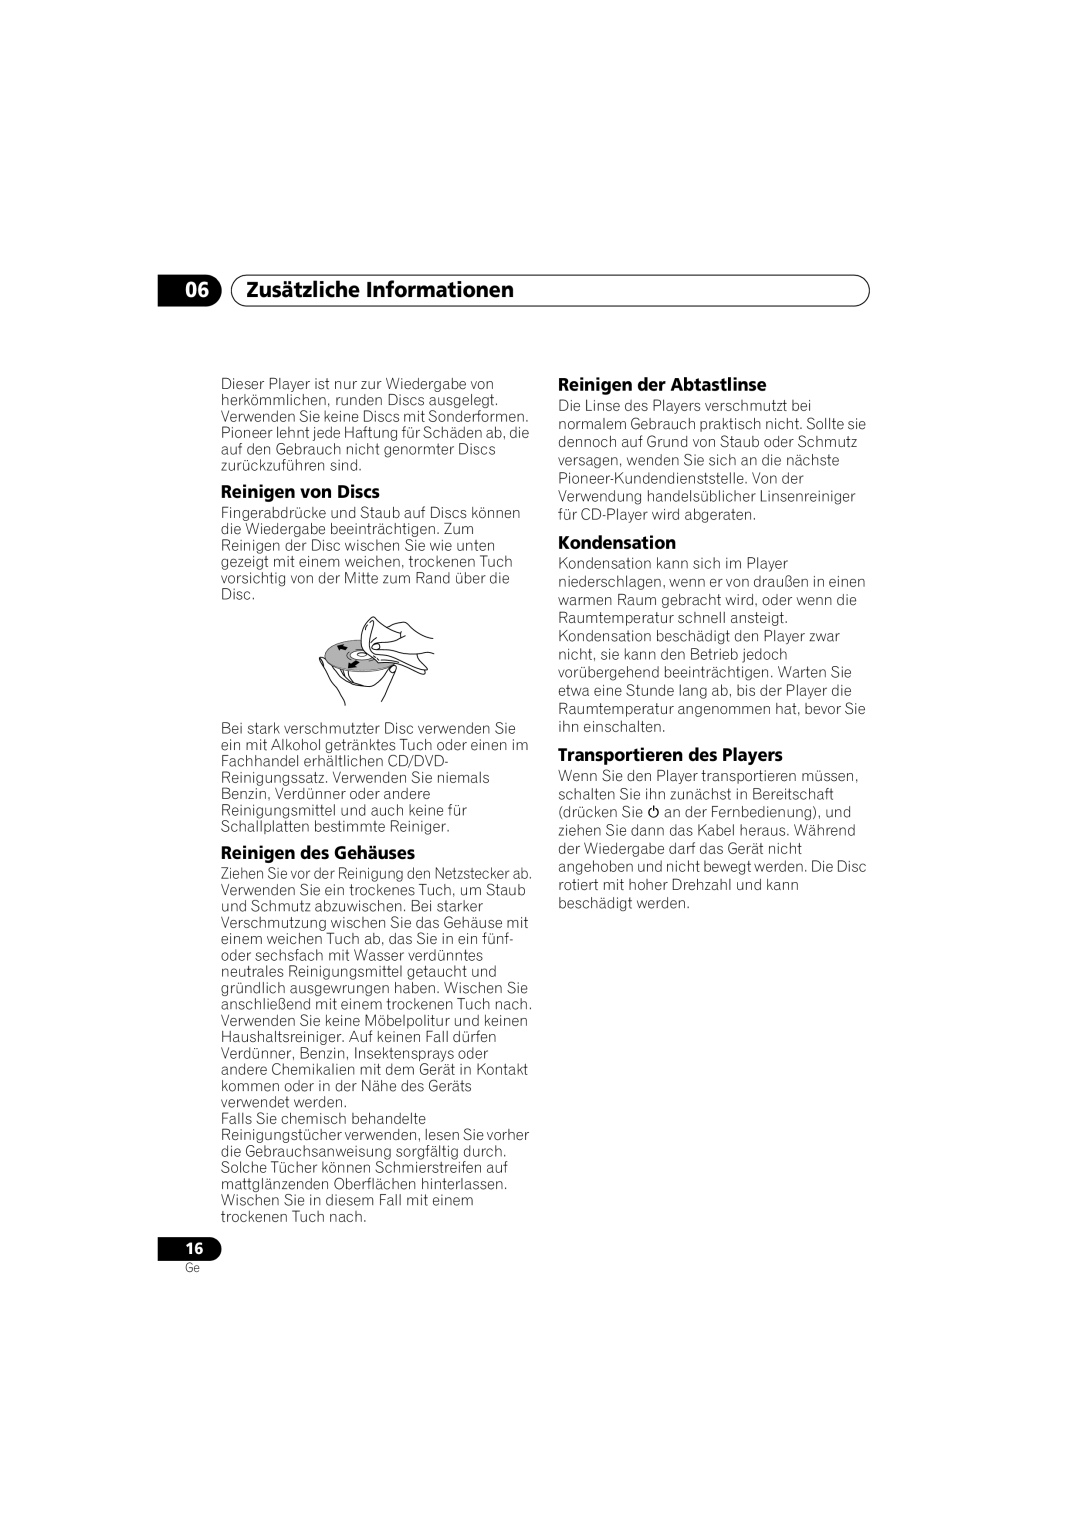 Pioneer PD-D6-J manual 06Zusätzliche Informationen, Reinigen von Discs, Reinigen des Gehäuses, Reinigen der Abtastlinse 